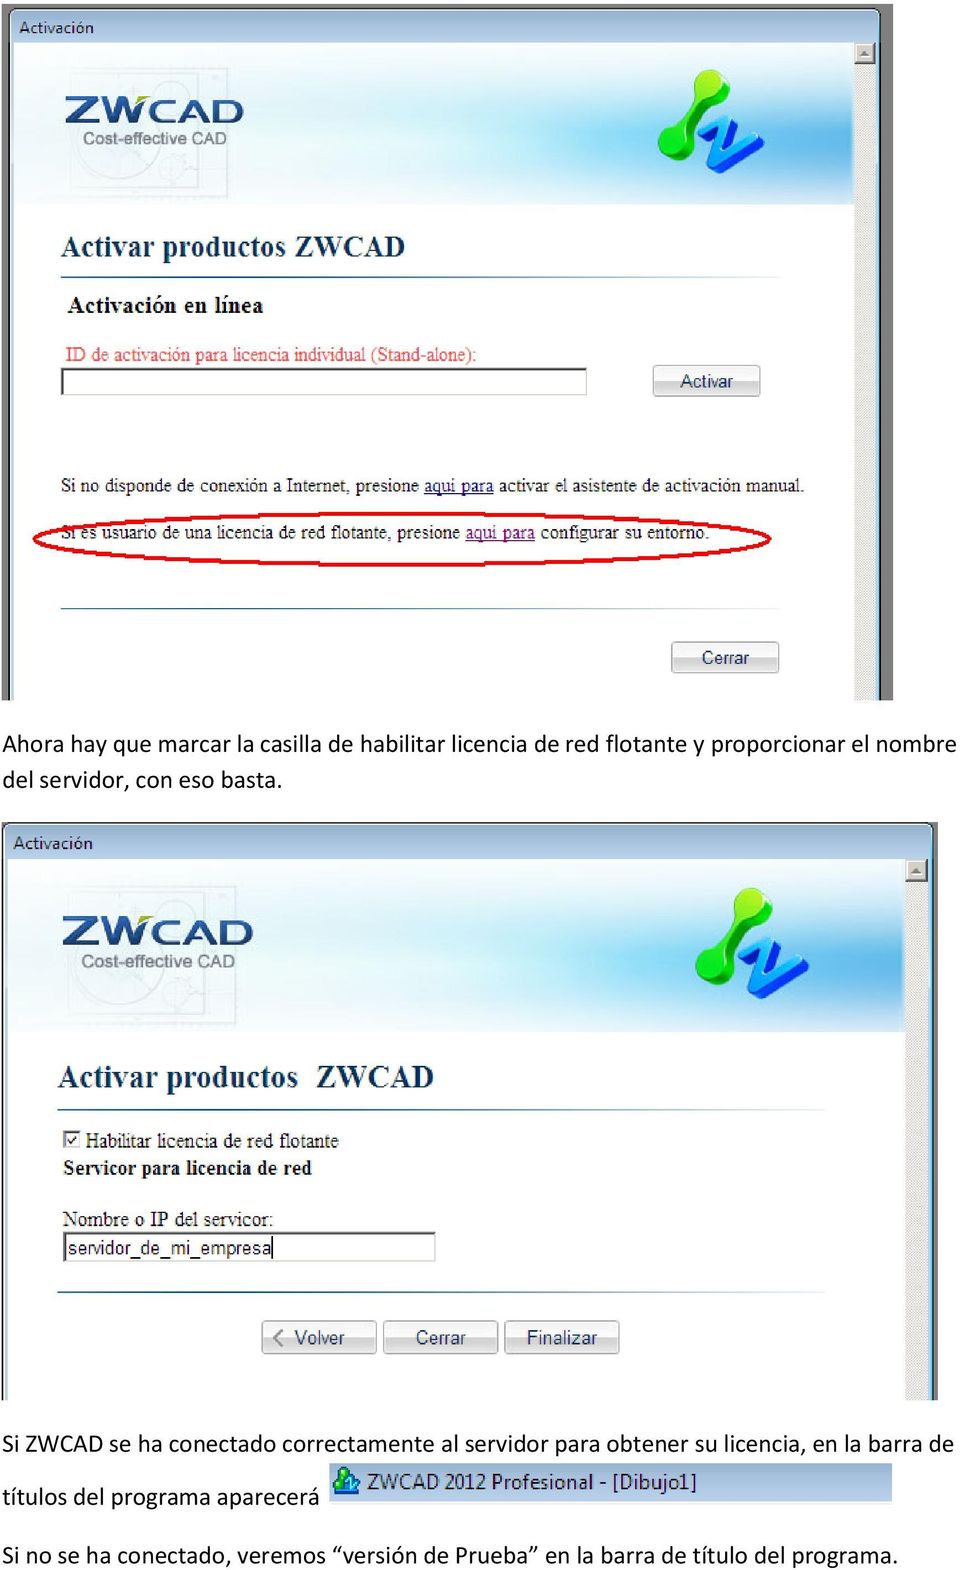 Si ZWCAD se ha conectado correctamente al servidor para obtener su licencia, en la